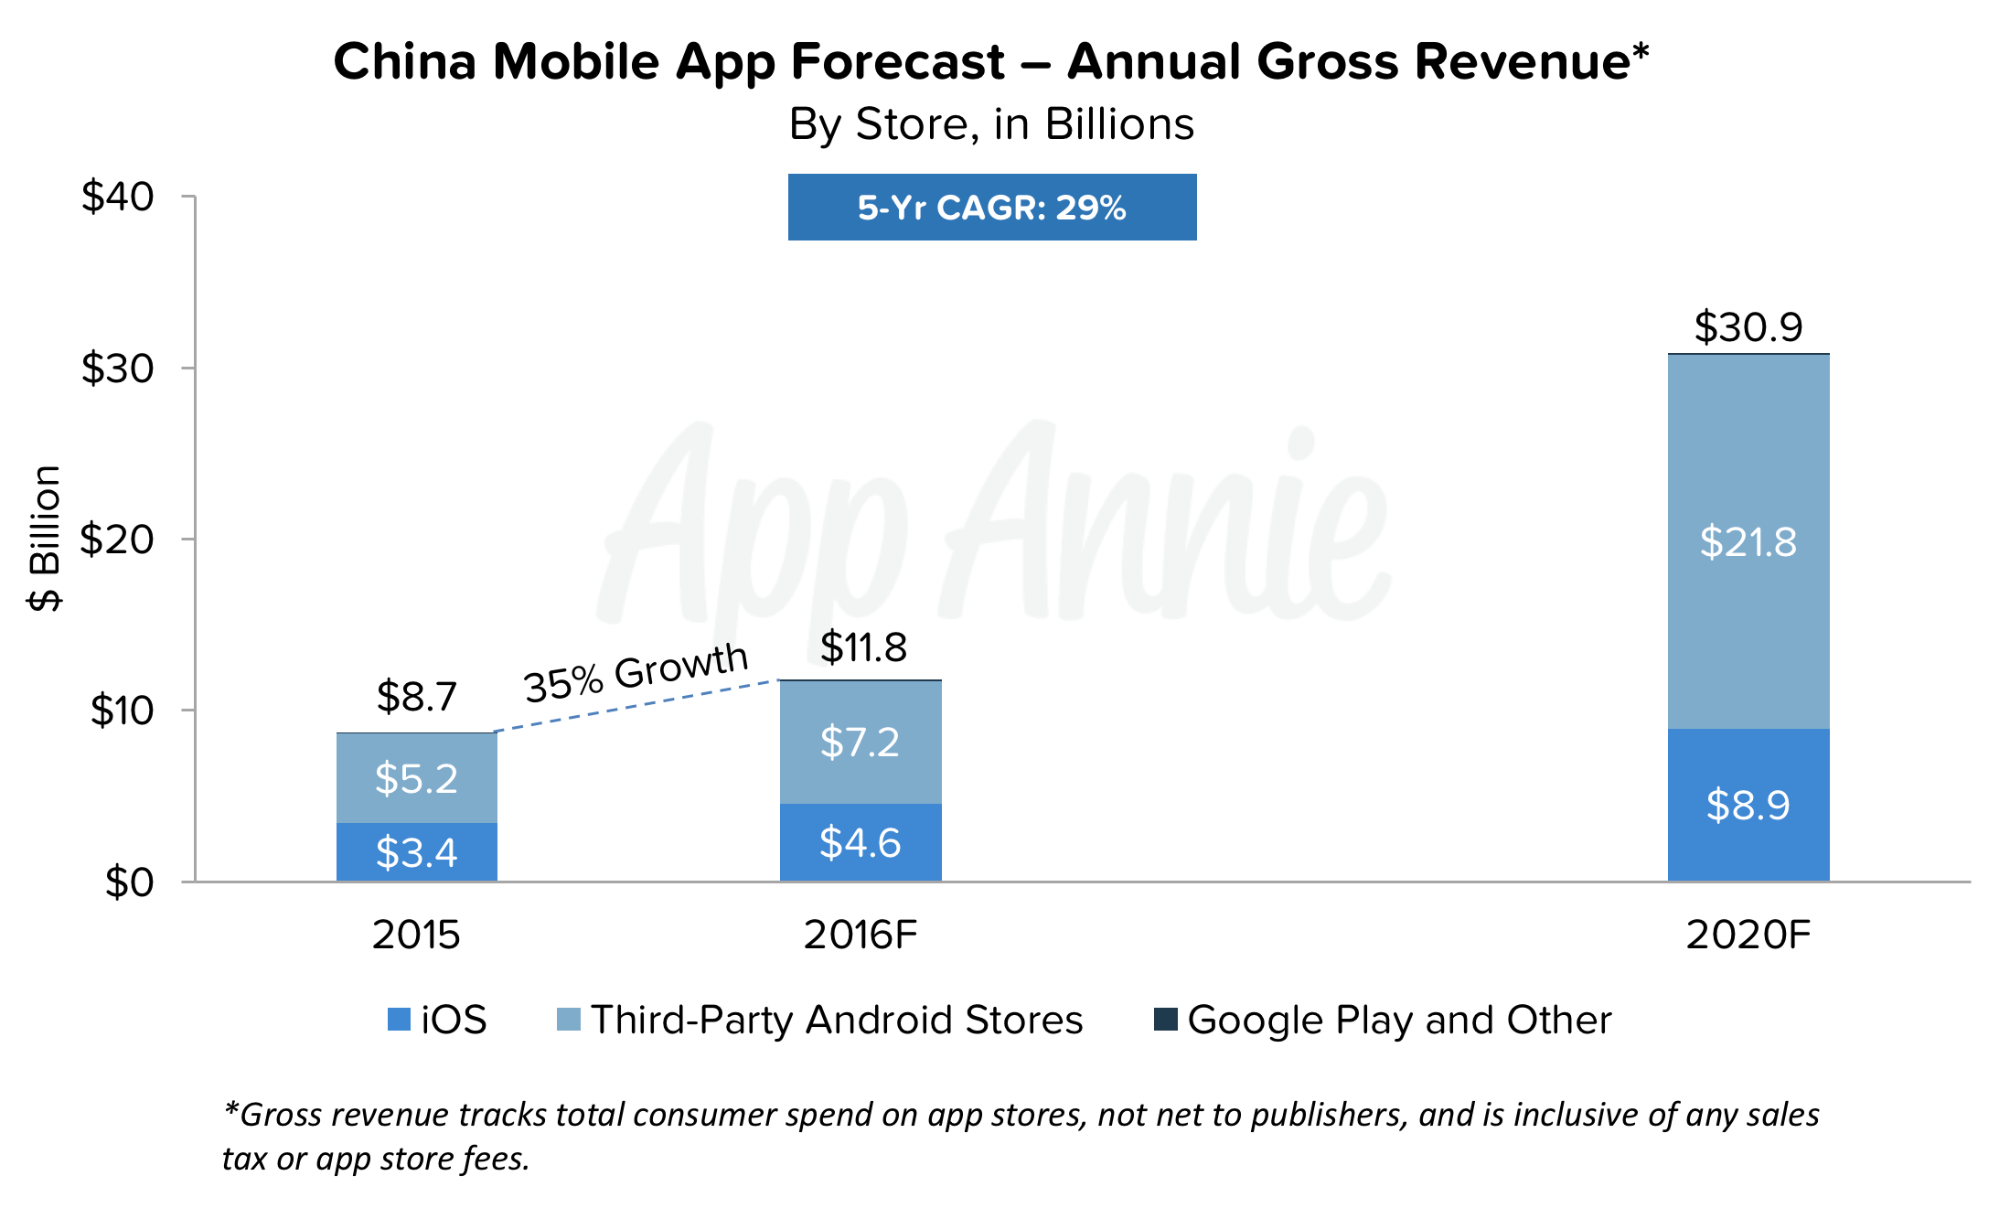 China Mobile App Forecast Annual Gross Revenue